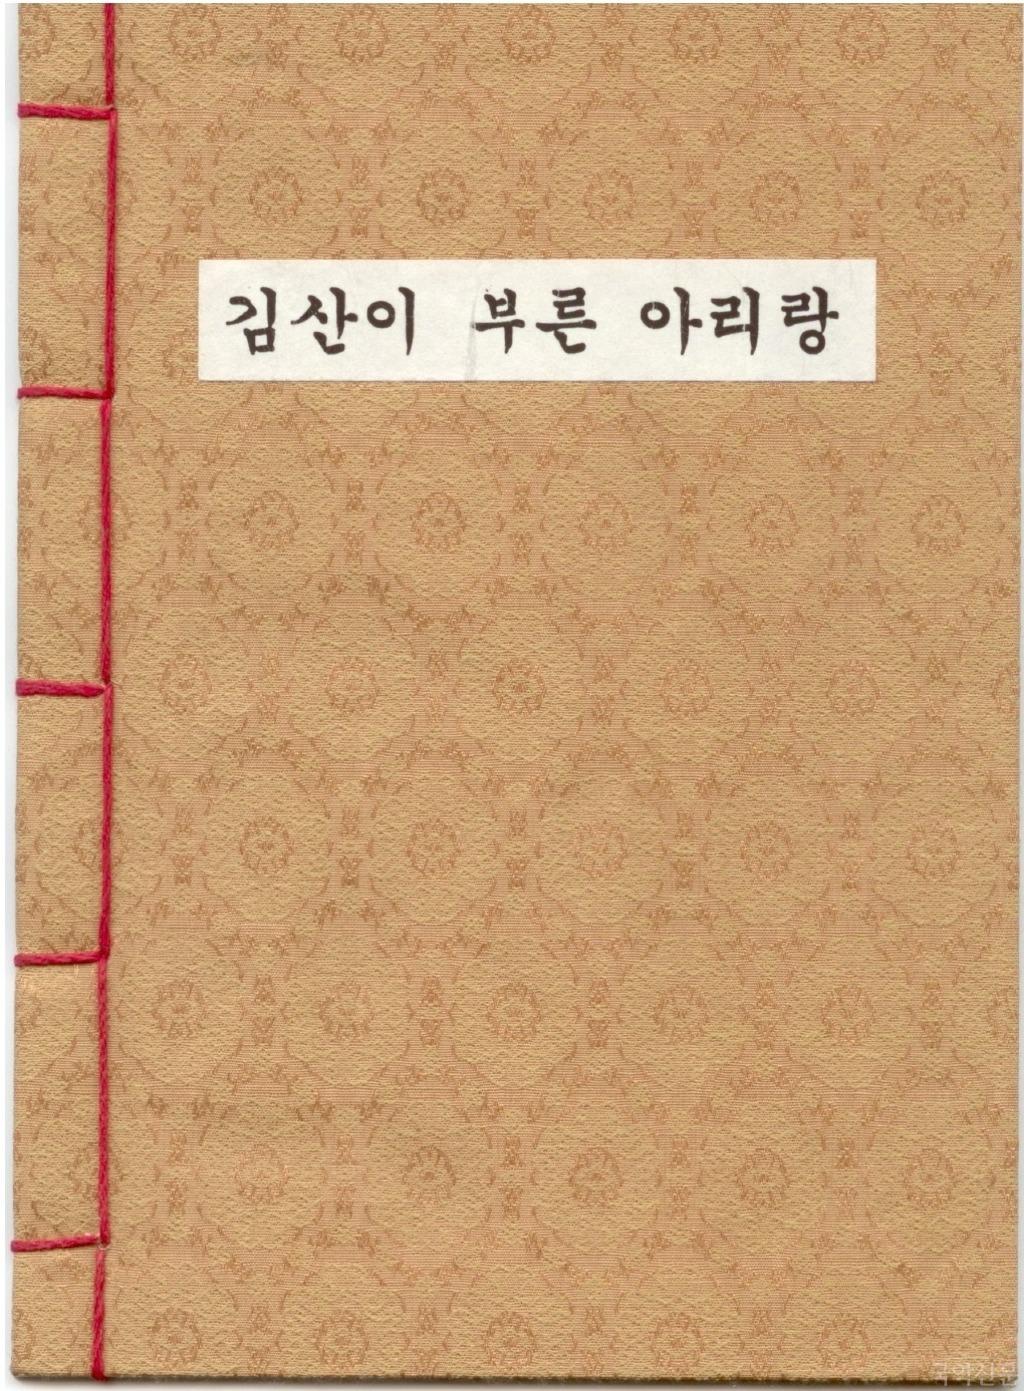 kimsanbook02.jpg